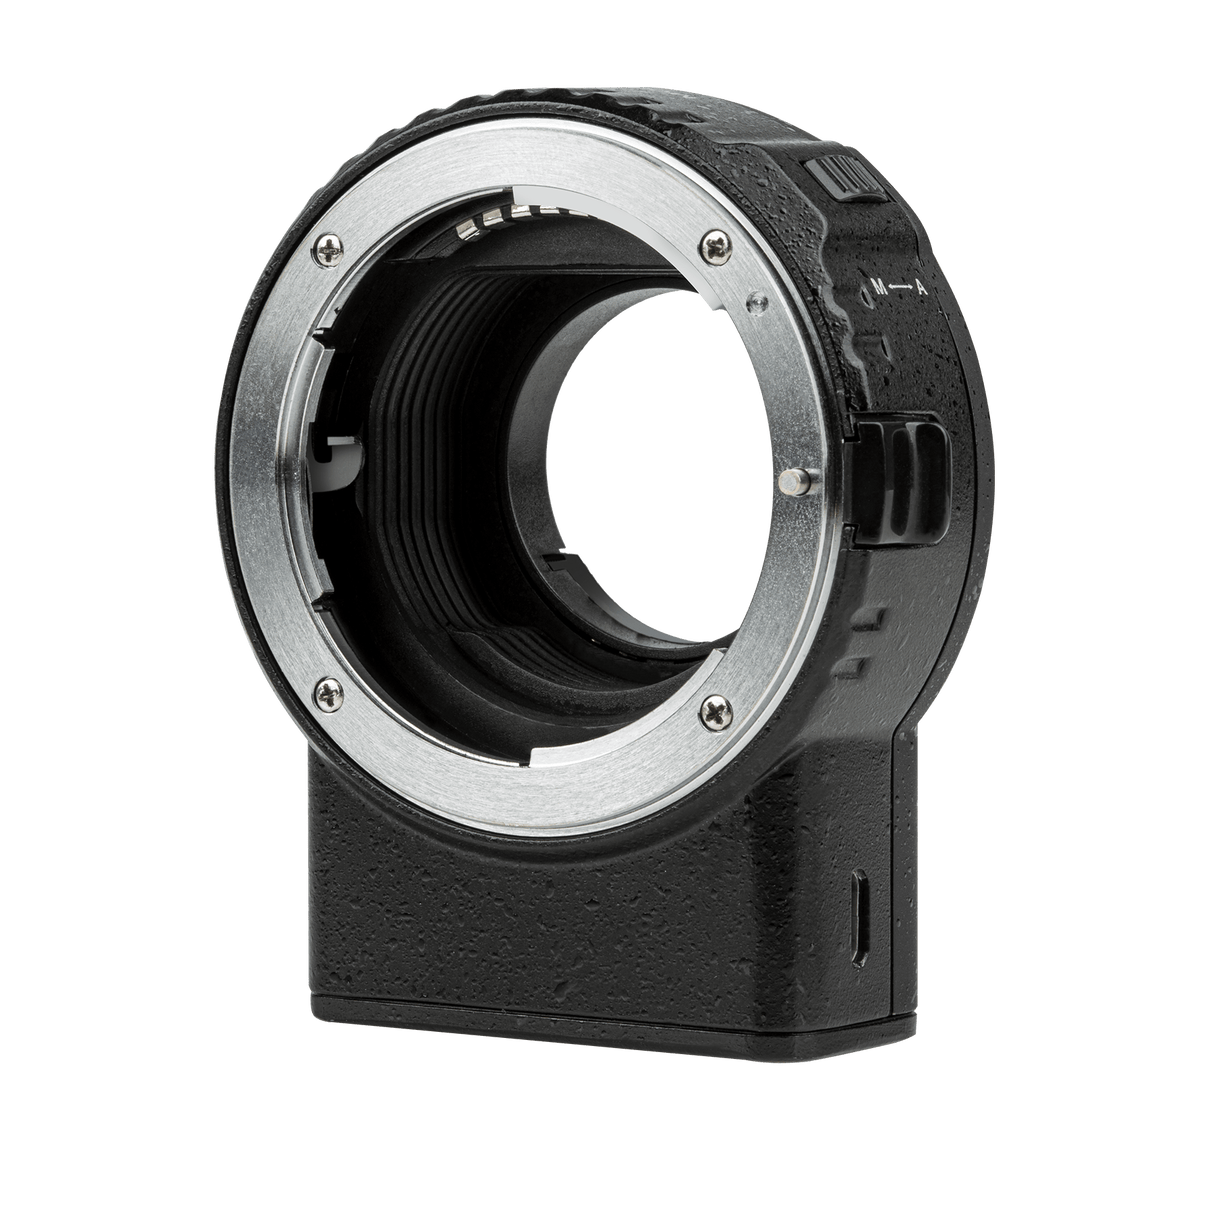 Rollei Objektive Viltrox NF-M1 Adapter für Nikon F-Objektive an MFT-Mount